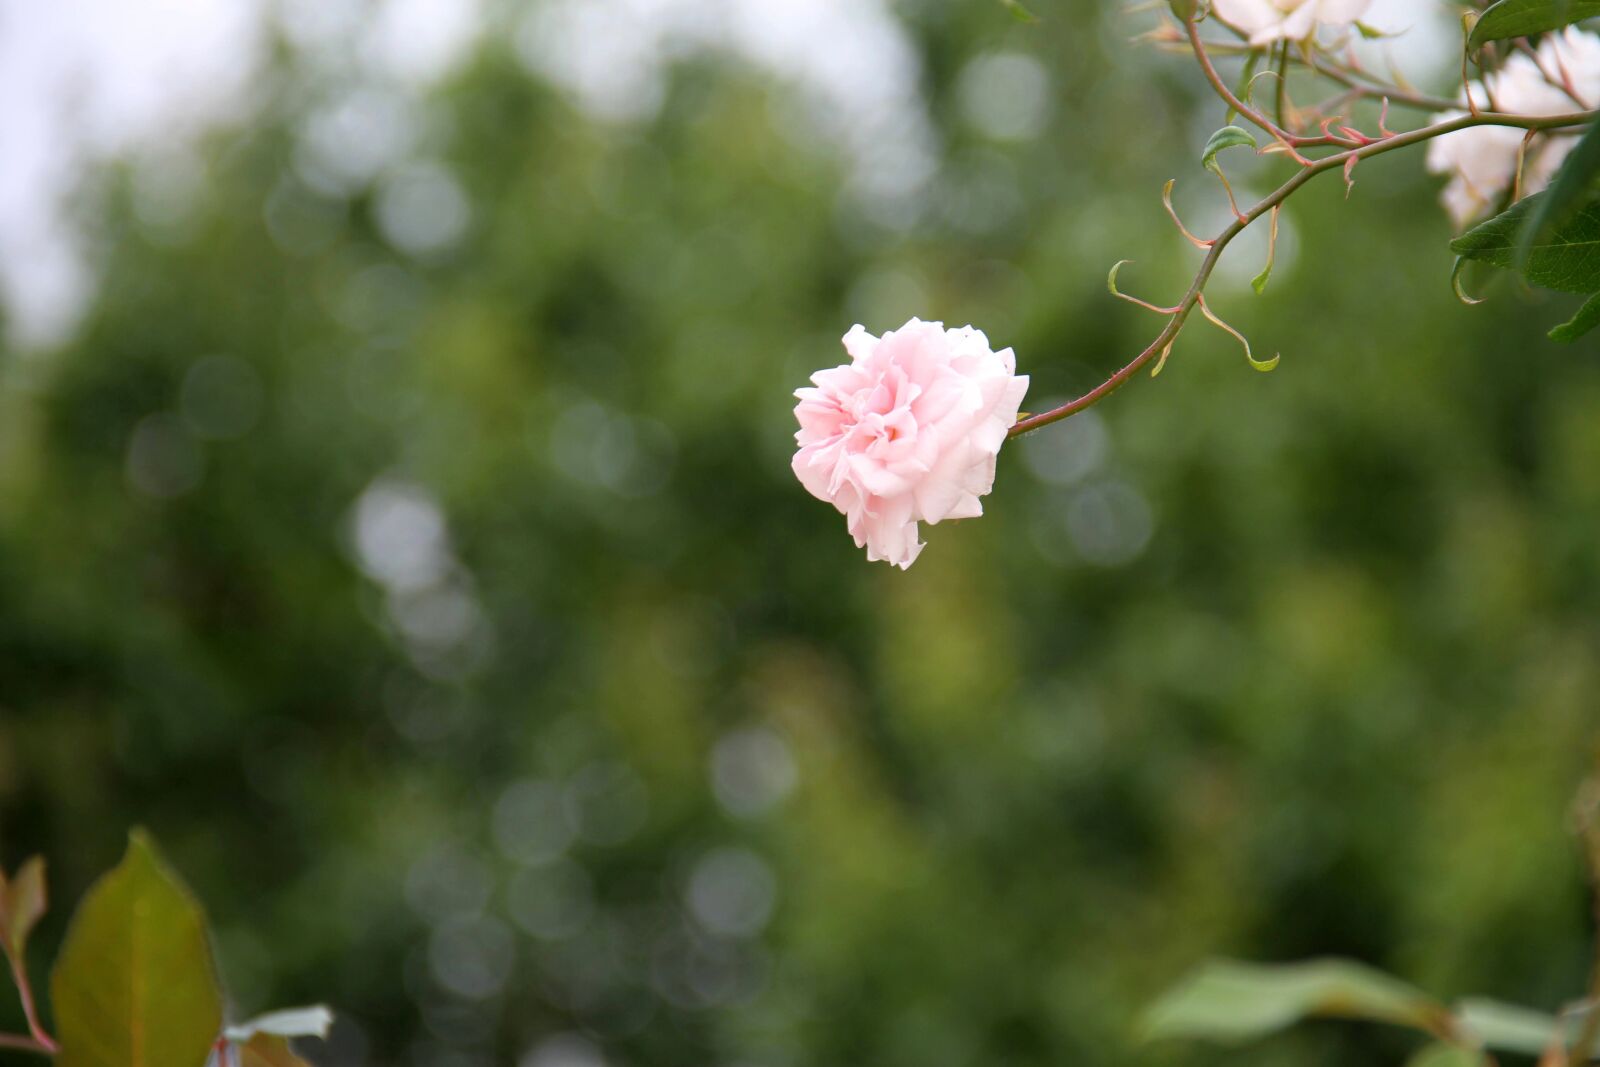 Canon EOS 7D sample photo. Rosa, flower, garden photography